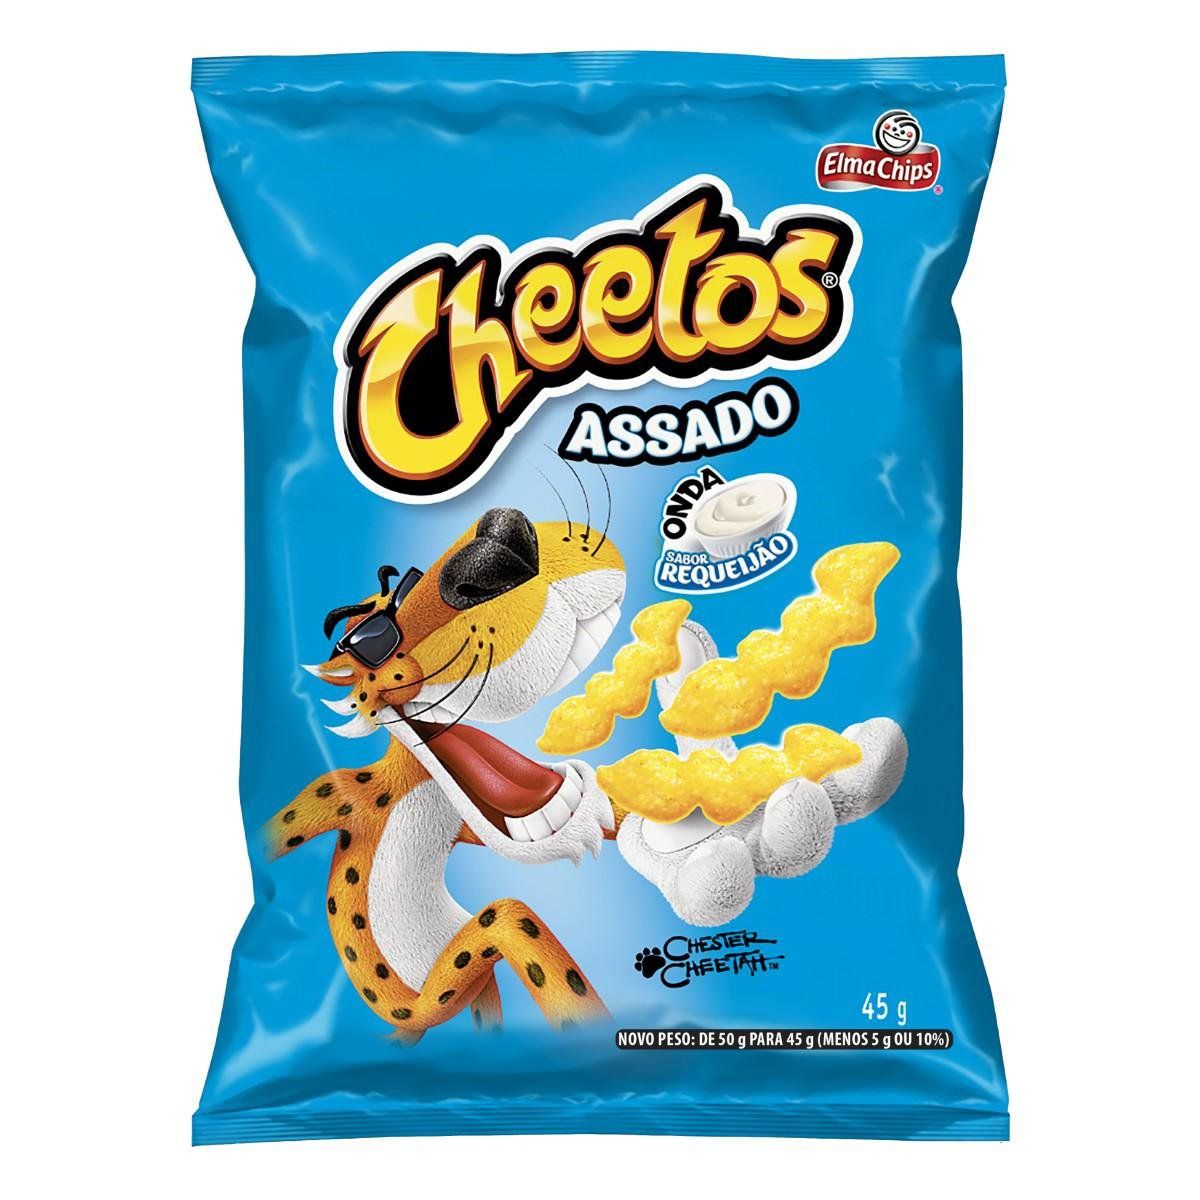 Salgadinho Cheetos Onda Requeijão Pacote 45g